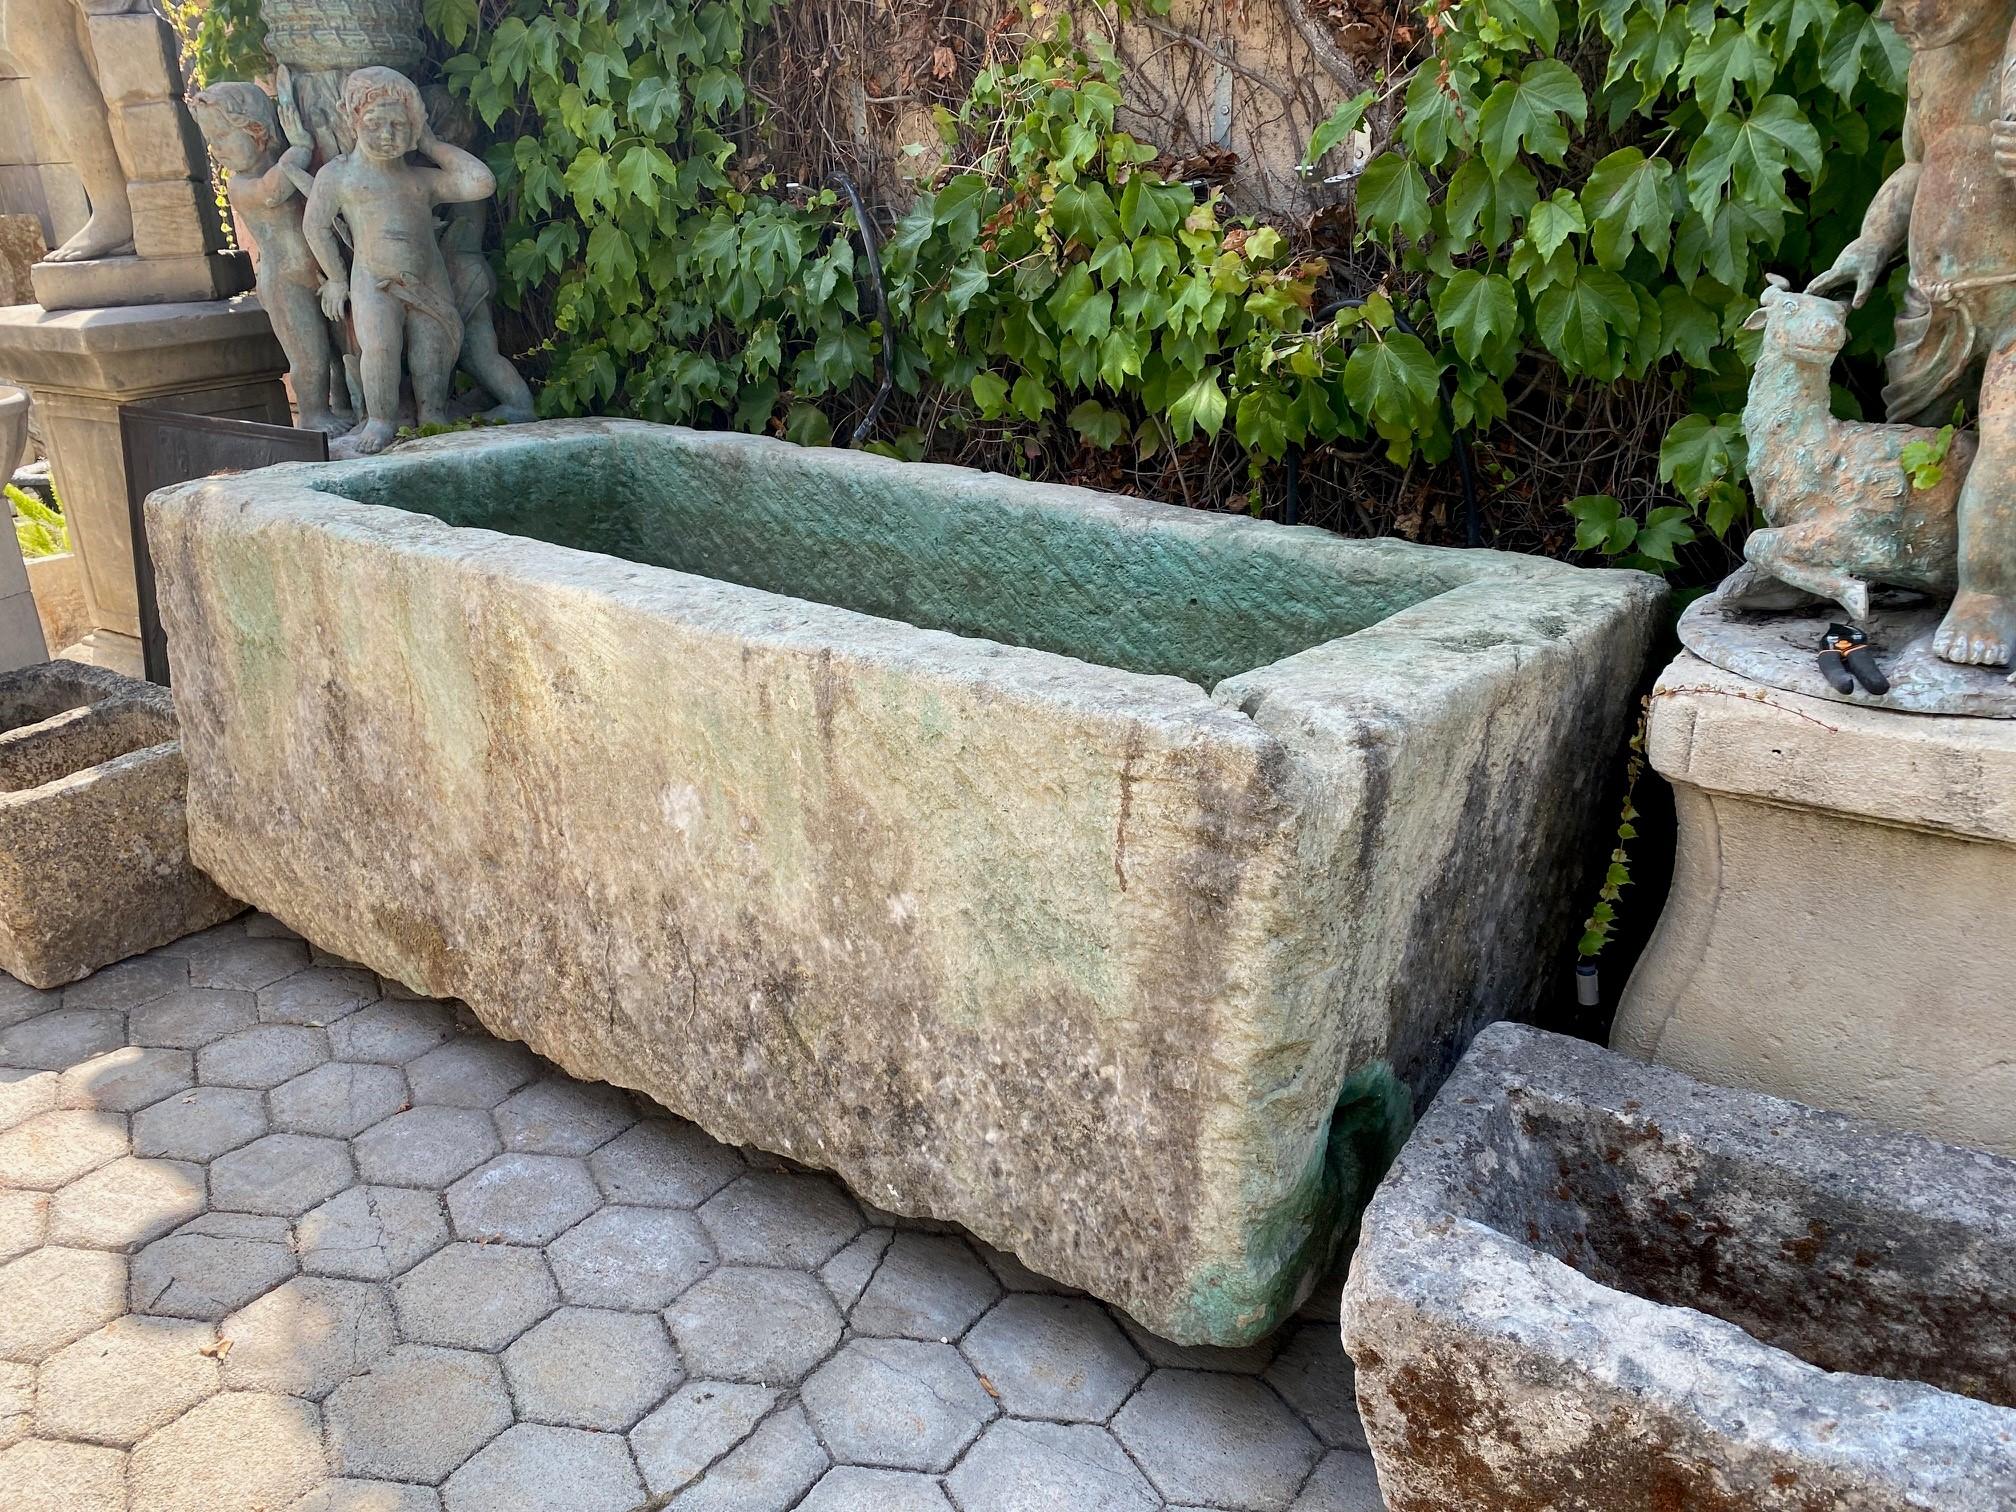 Hand Carved Stone Container Fountain Basin Tub Planter Firepit Trough Antique LA . Exquisite sehr große 18. Jahrhundert Brunnen Becken von Hand geschnitzten Stein. Dieser Trog könnte mit einem einfachen Bronzeauslauf oder einem geschnitzten